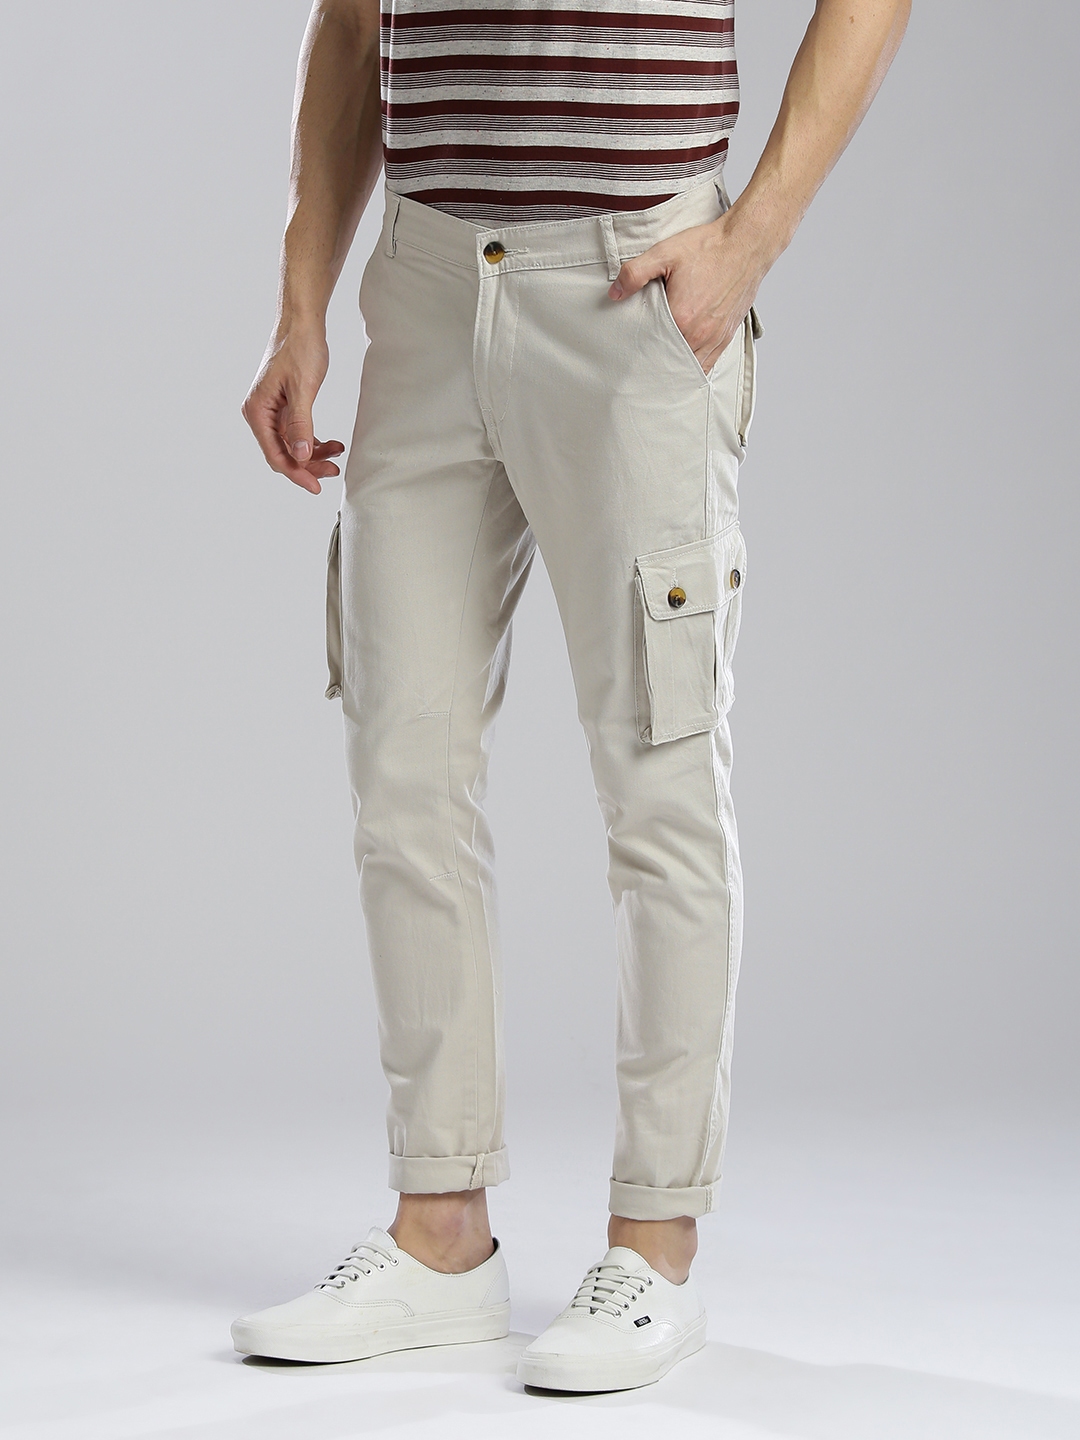 Buy Navy Blue Trousers  Pants for Men by Hubberholme Online  Ajiocom